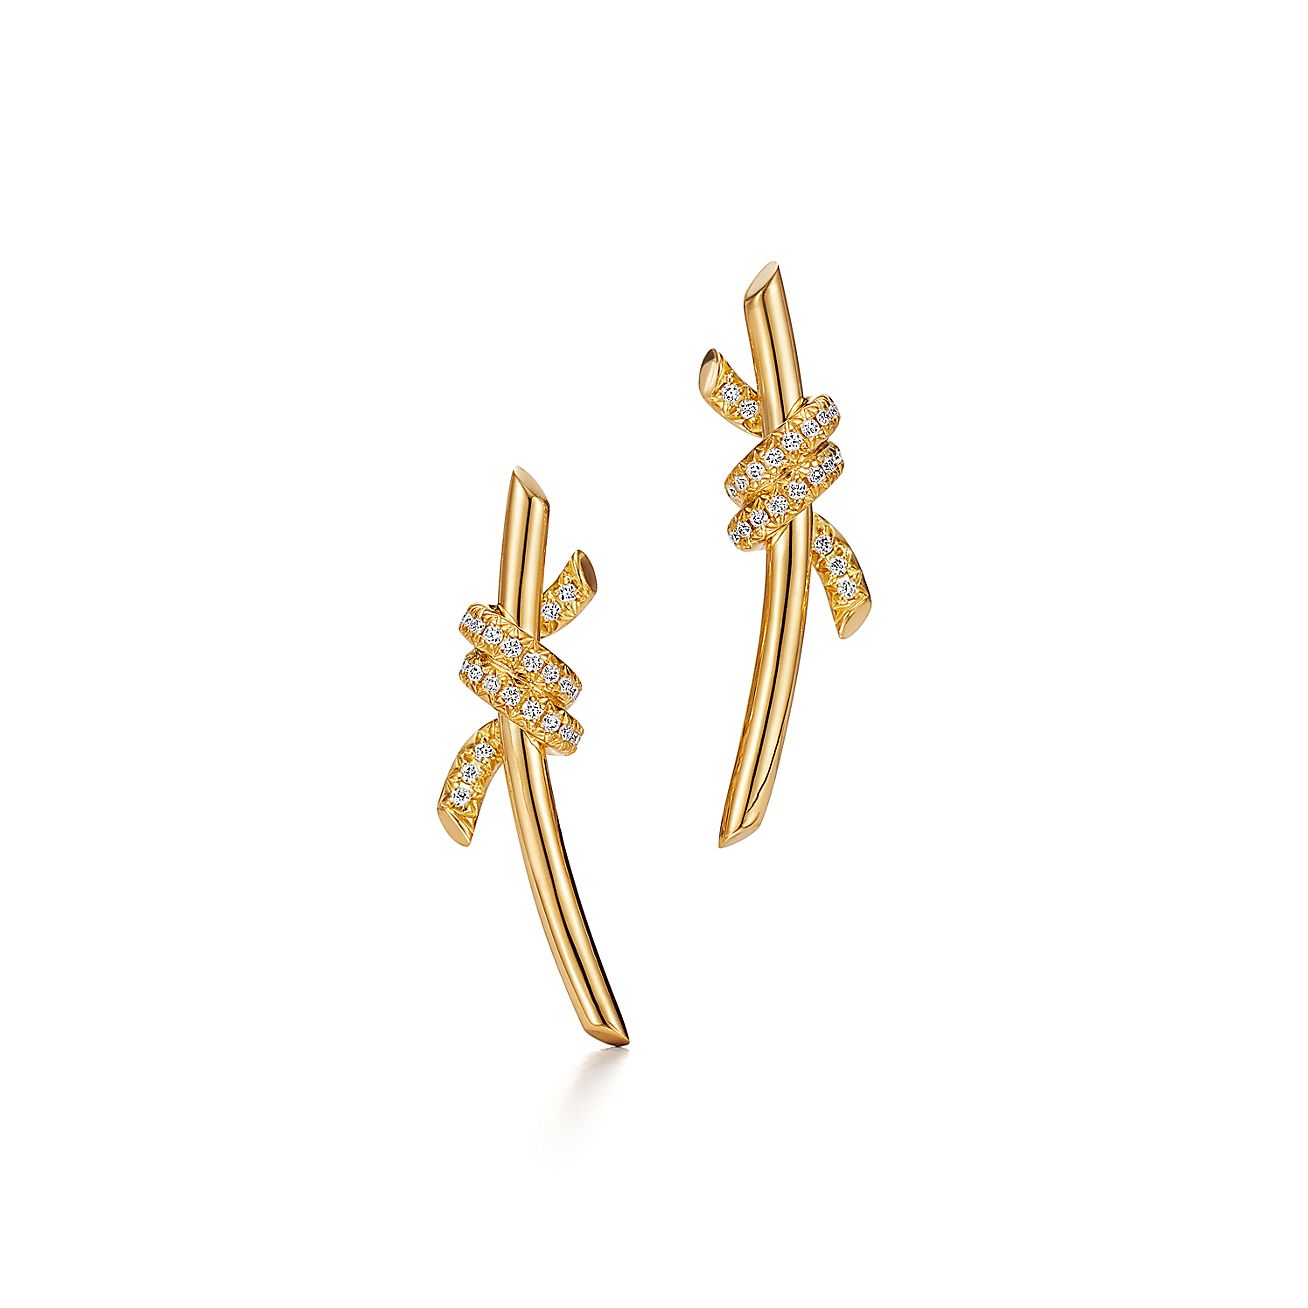 Boucles d'oreilles Tiffany Knot en or jaune 18 carats et diamants Tiffany & Co.